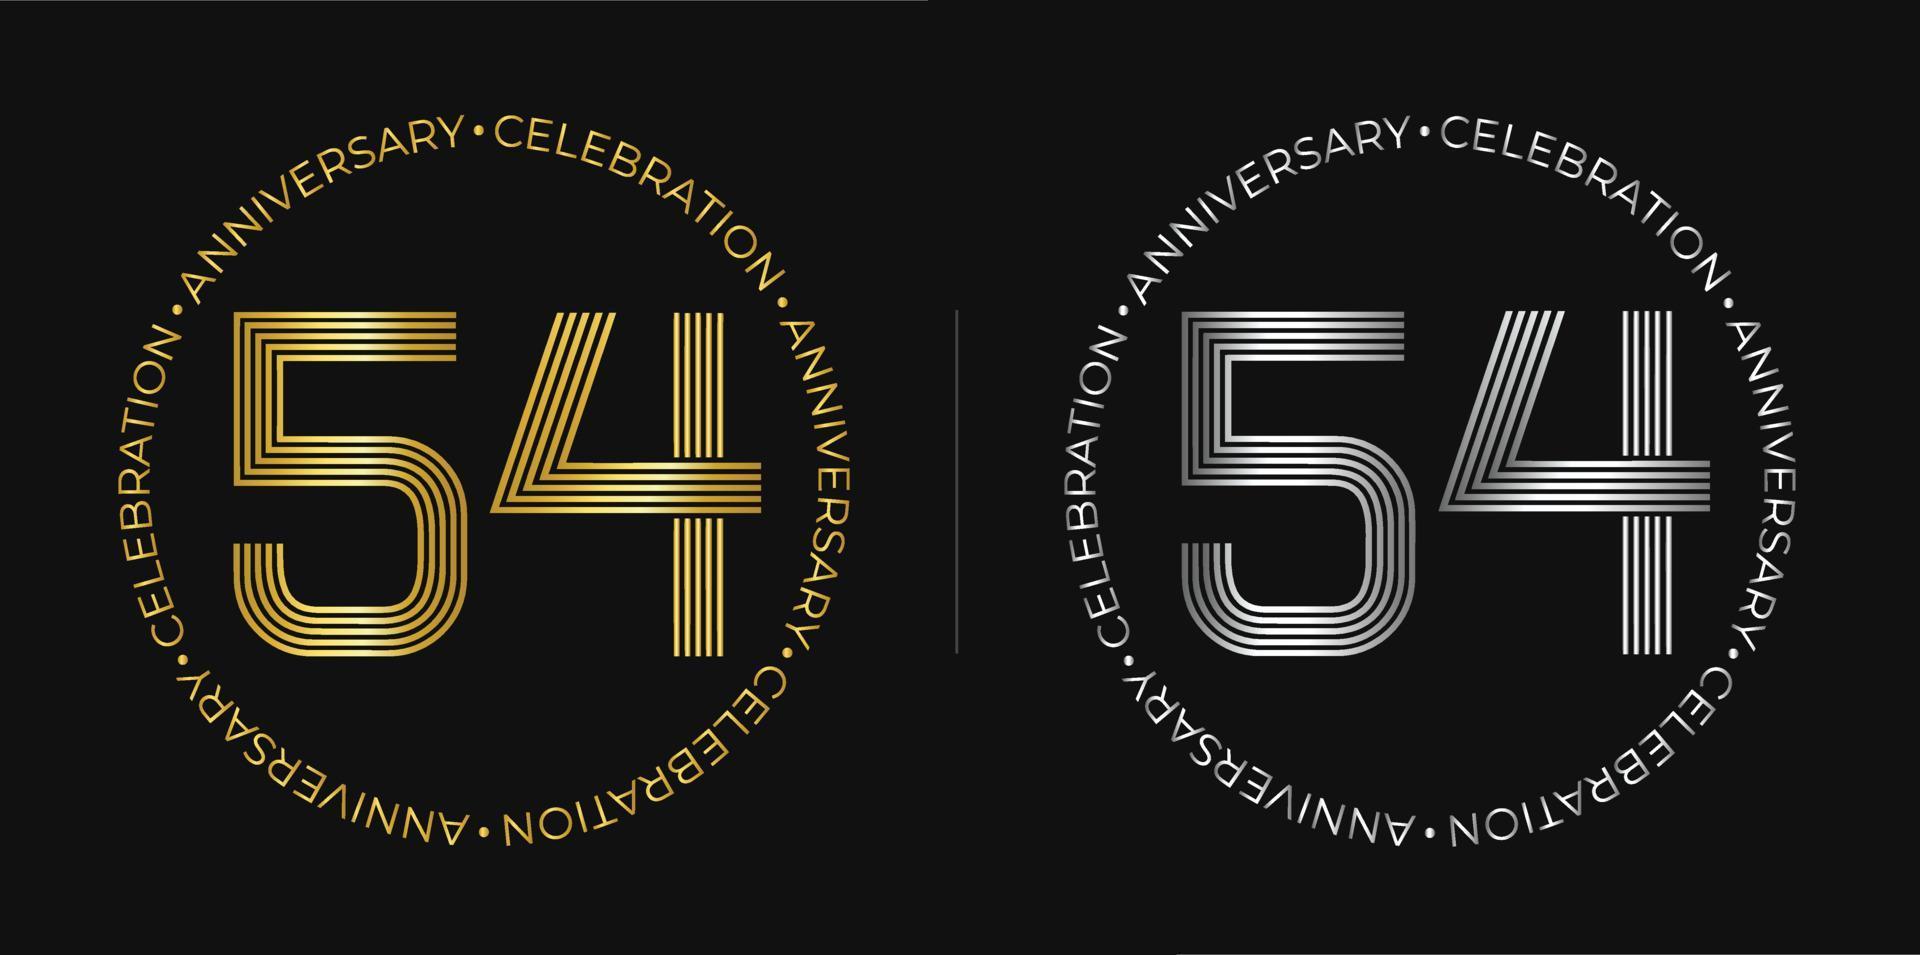 54e anniversaire. bannière de célébration d'anniversaire de cinquante-quatre ans aux couleurs dorées et argentées. logo circulaire avec un design original de chiffres aux lignes élégantes. vecteur